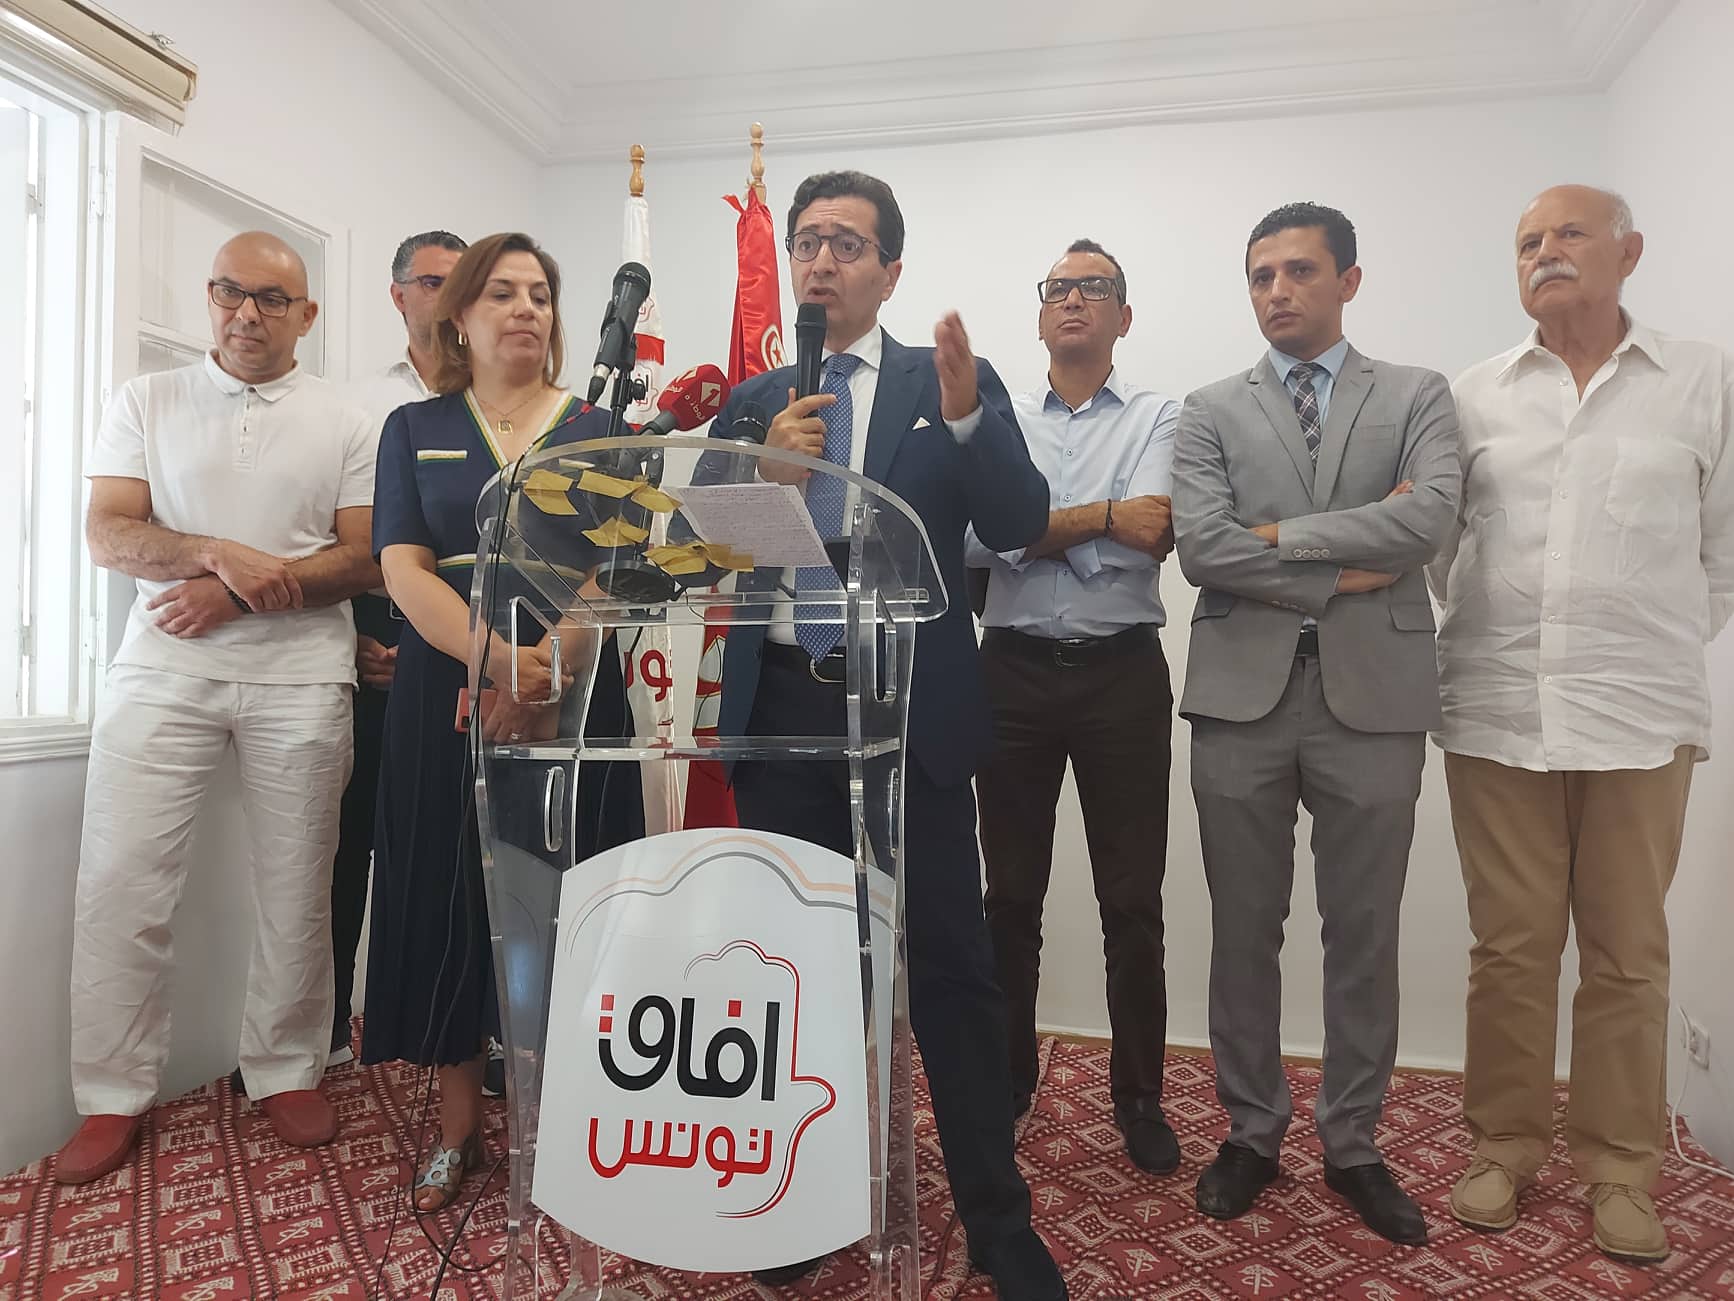 رئيس "افاق تونس" لـ"الصباح نيوز": قلنا نعم لـ25 جويلية.. ويوم 22 سبتمبر تغيّرت المُعطيات